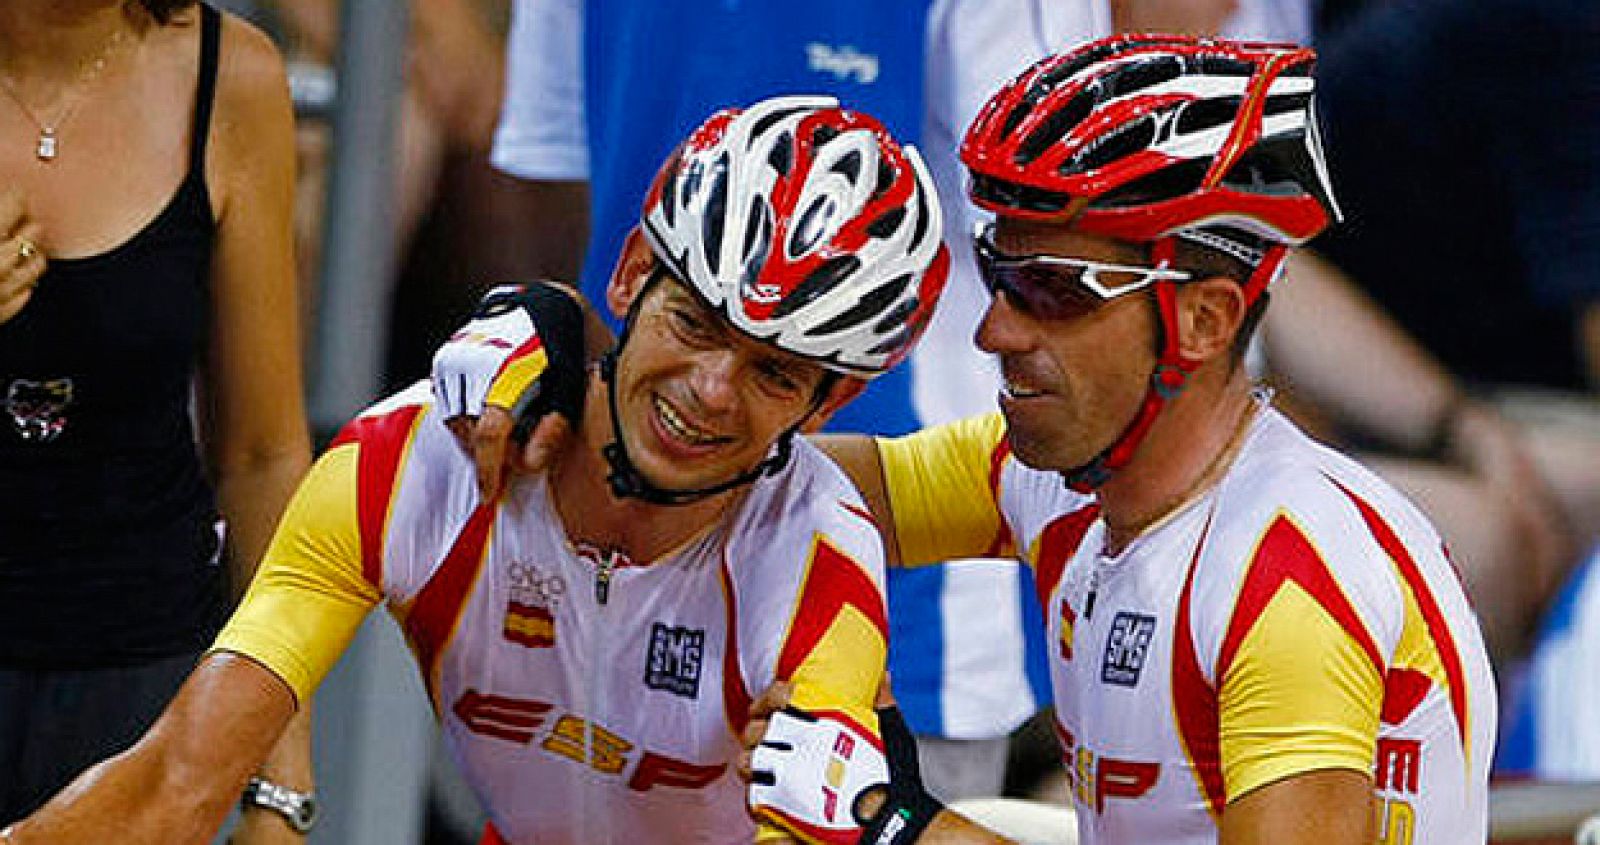 Joan Llaneras celebra la presea de oro conseguida en ciclismo en pista en los Juegos de Pekín 2008.